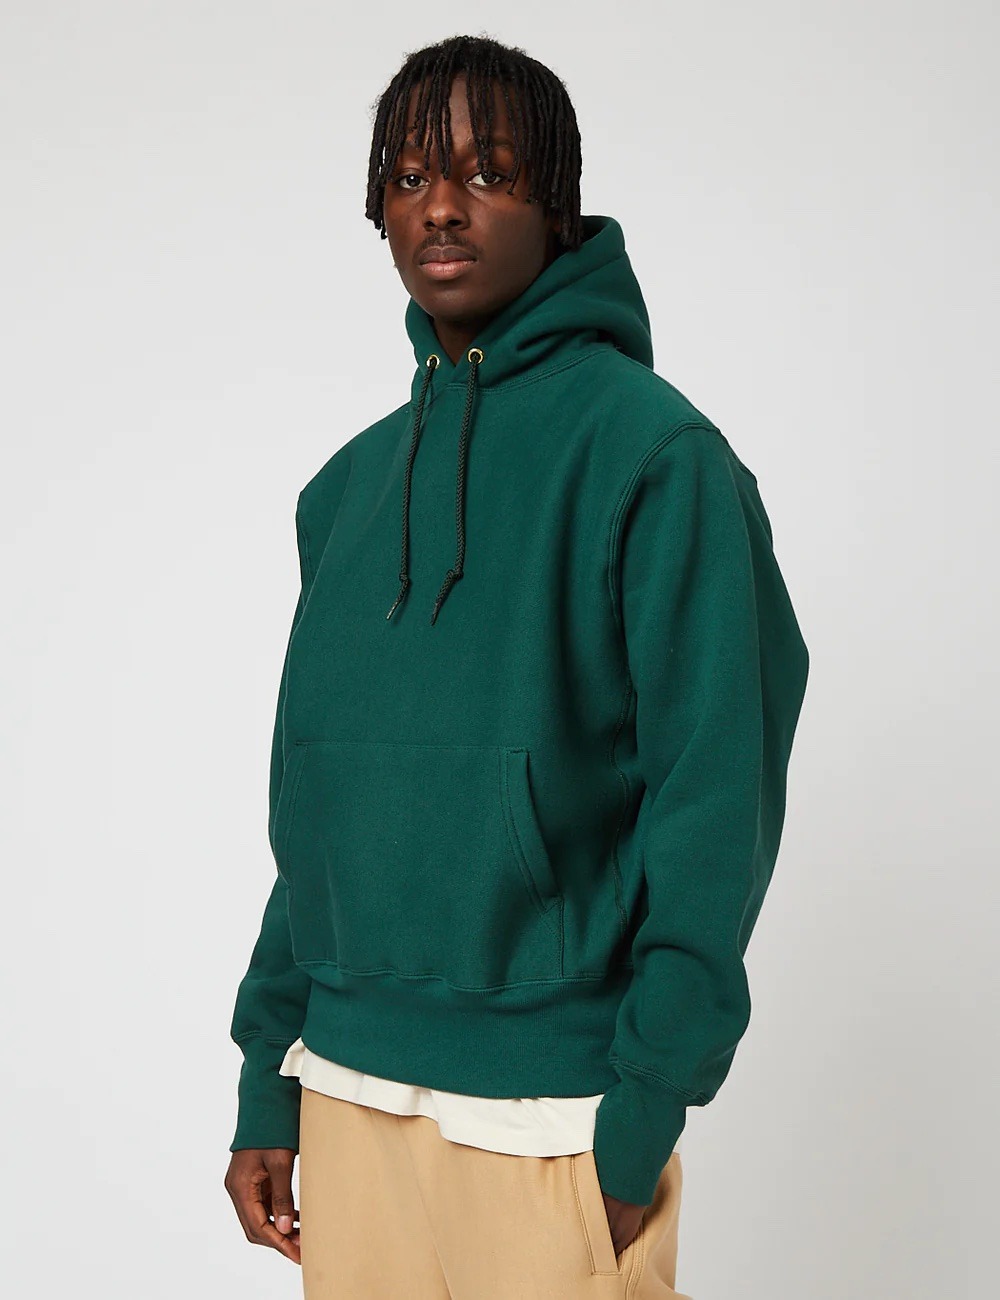 Quelles marques pour un beau hoodie ? Notre sélection